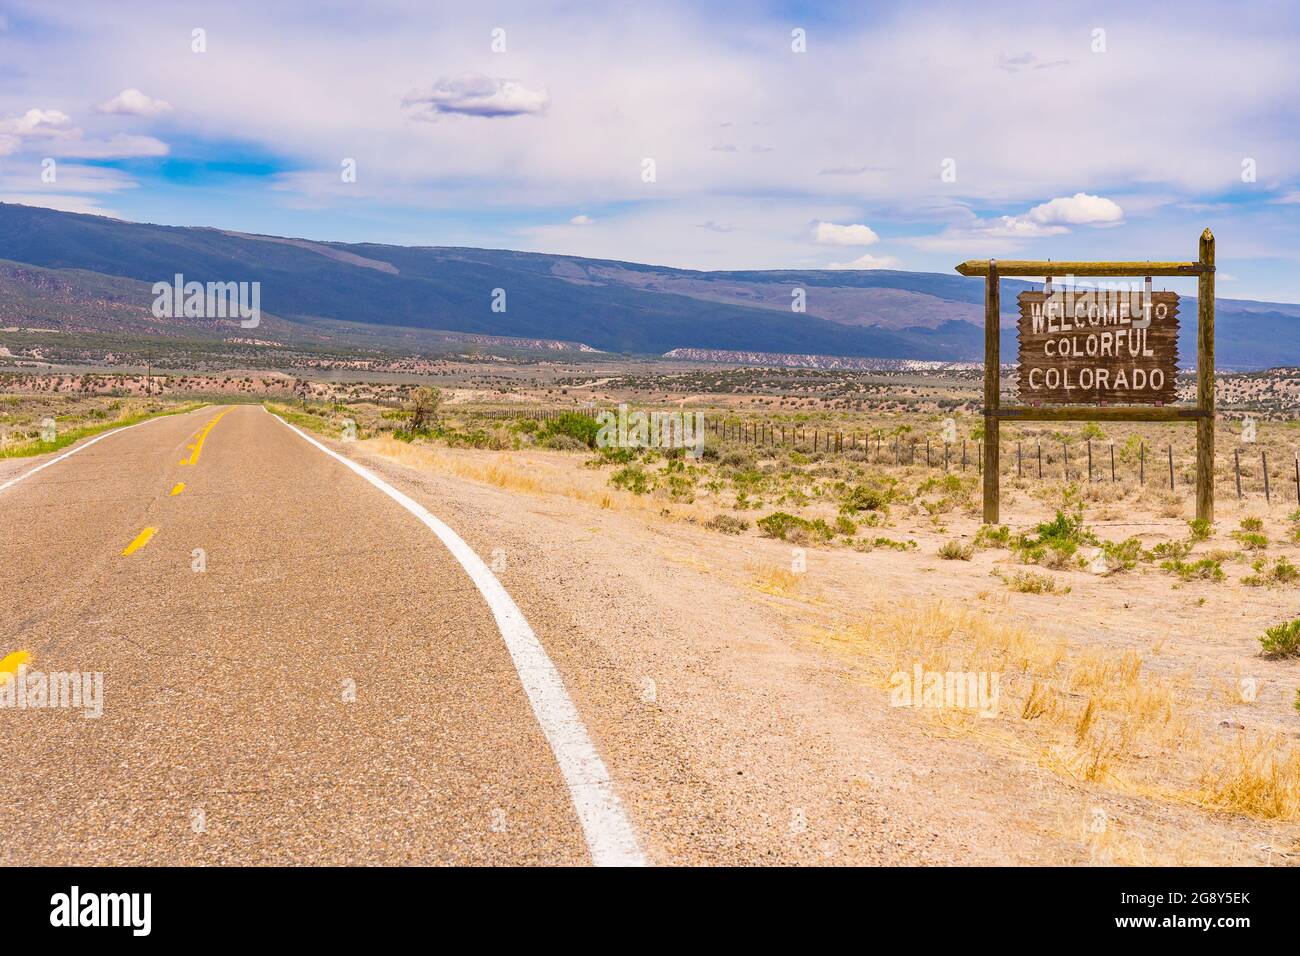 Bienvenido al colorido cartel de Colorado a lo largo de una larga carretera en la frontera de Colorado y Utah. Foto de stock